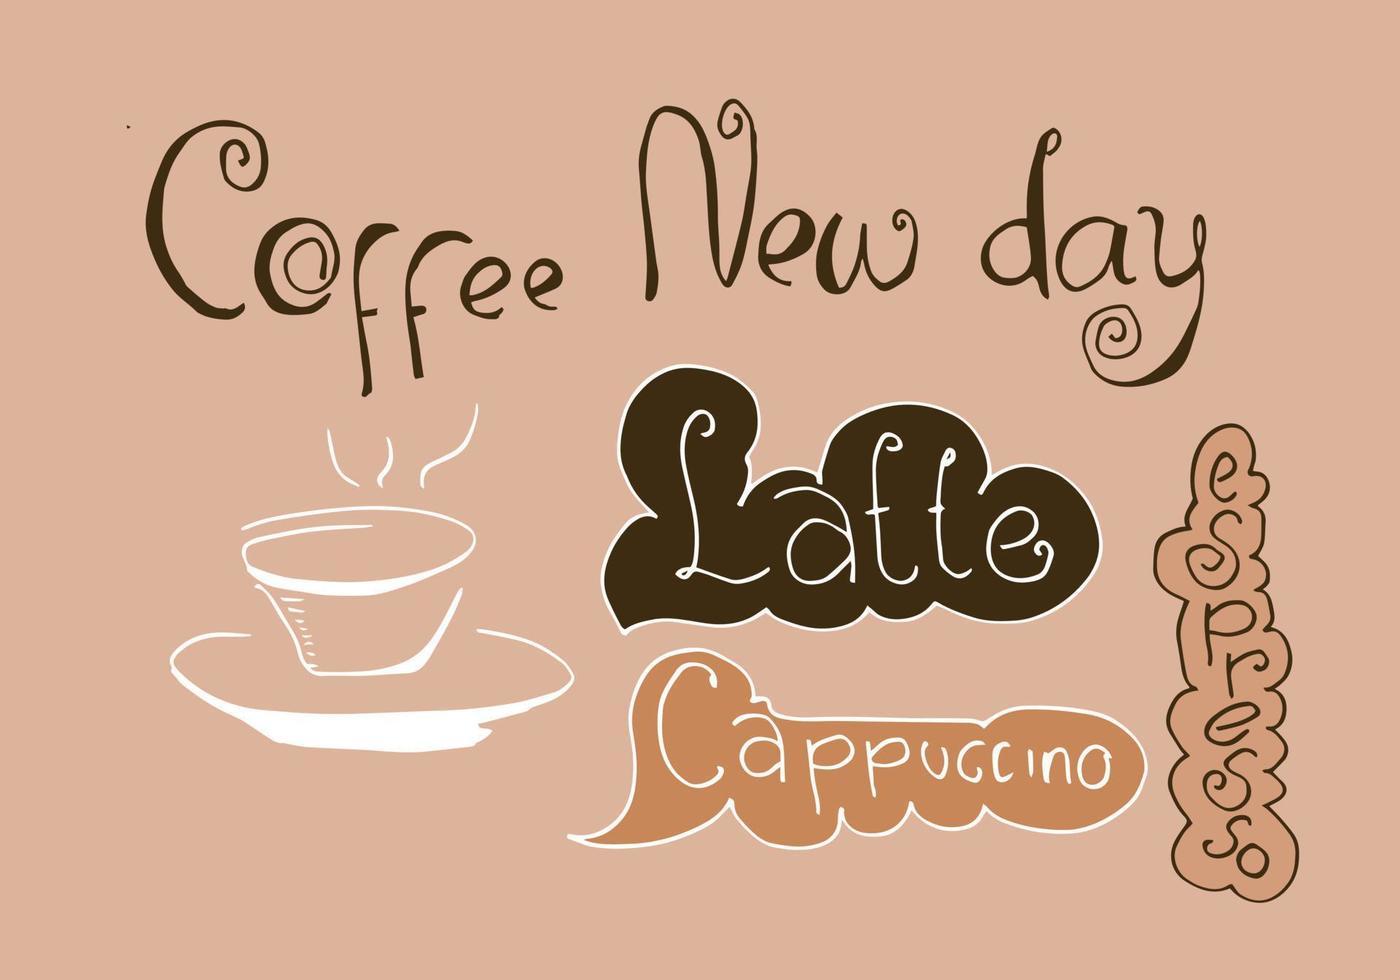 una raccolta di elementi del tempo del caffè con immagini di testo caffè nuovo giorno, latte, caffè espresso, cappuccino e tazza di caffè vettore